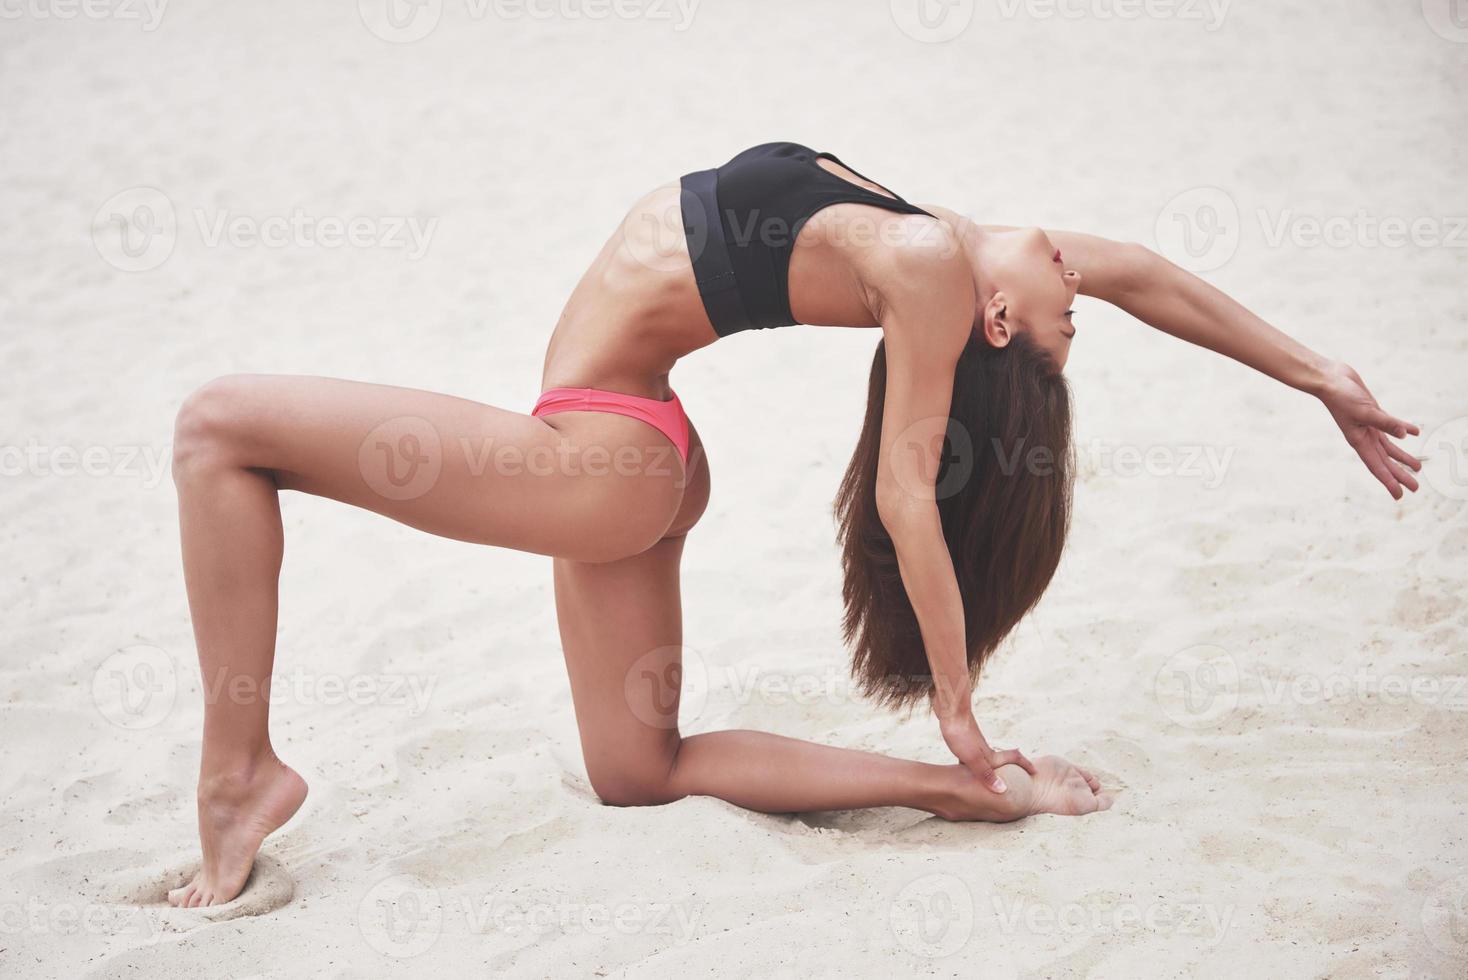 vacker smal lyxflicka i bikini på sandstranden på en tropisk ö. sexig solbränd kropp och perfekt figur foto